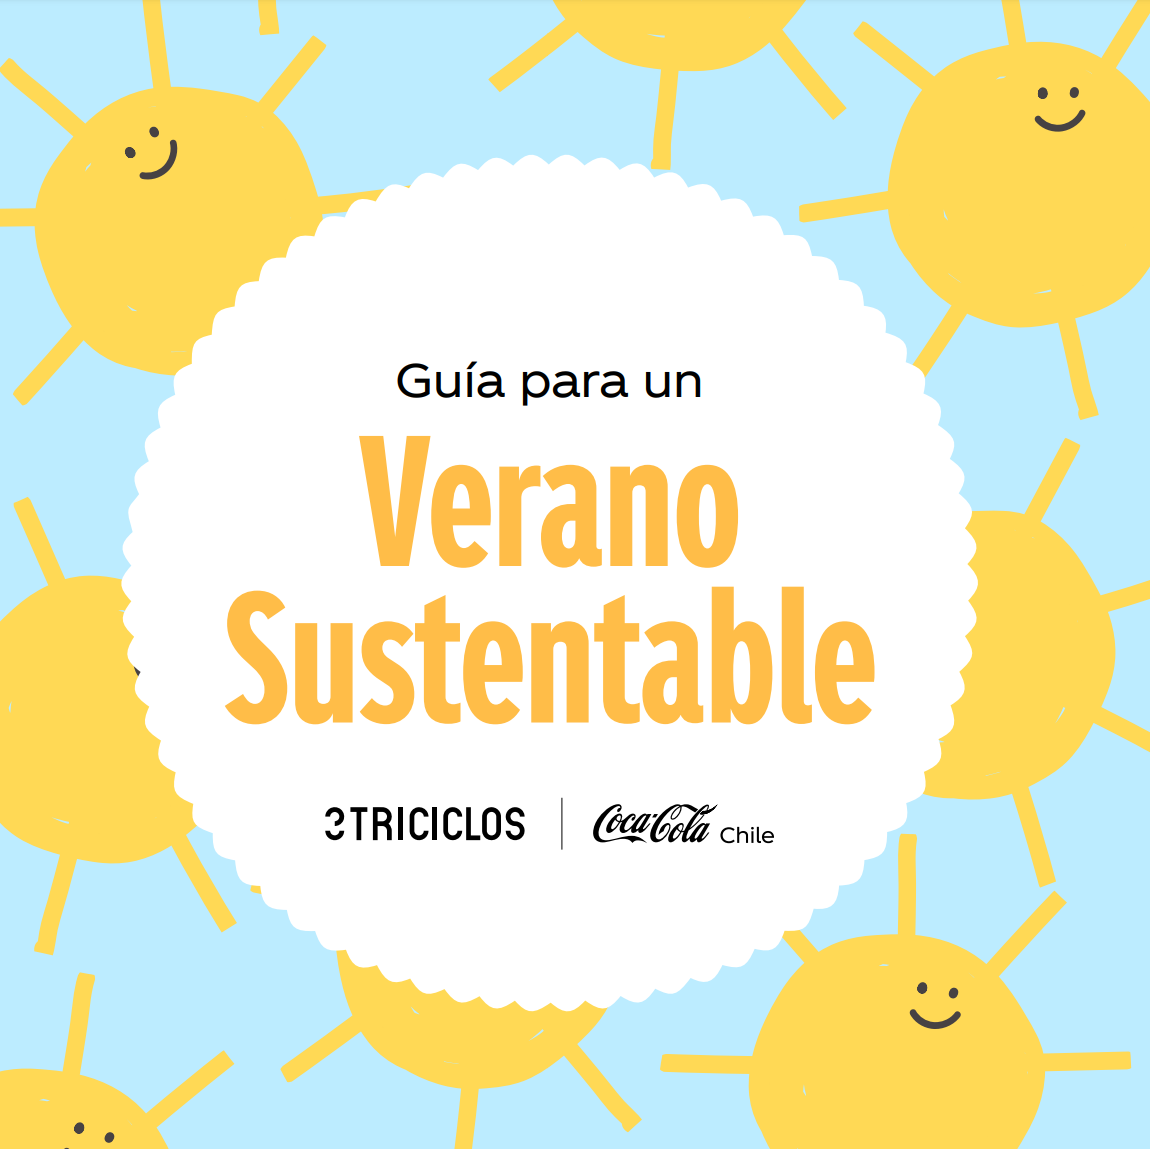 Ilustración de la Guía para un Verano Sustentable